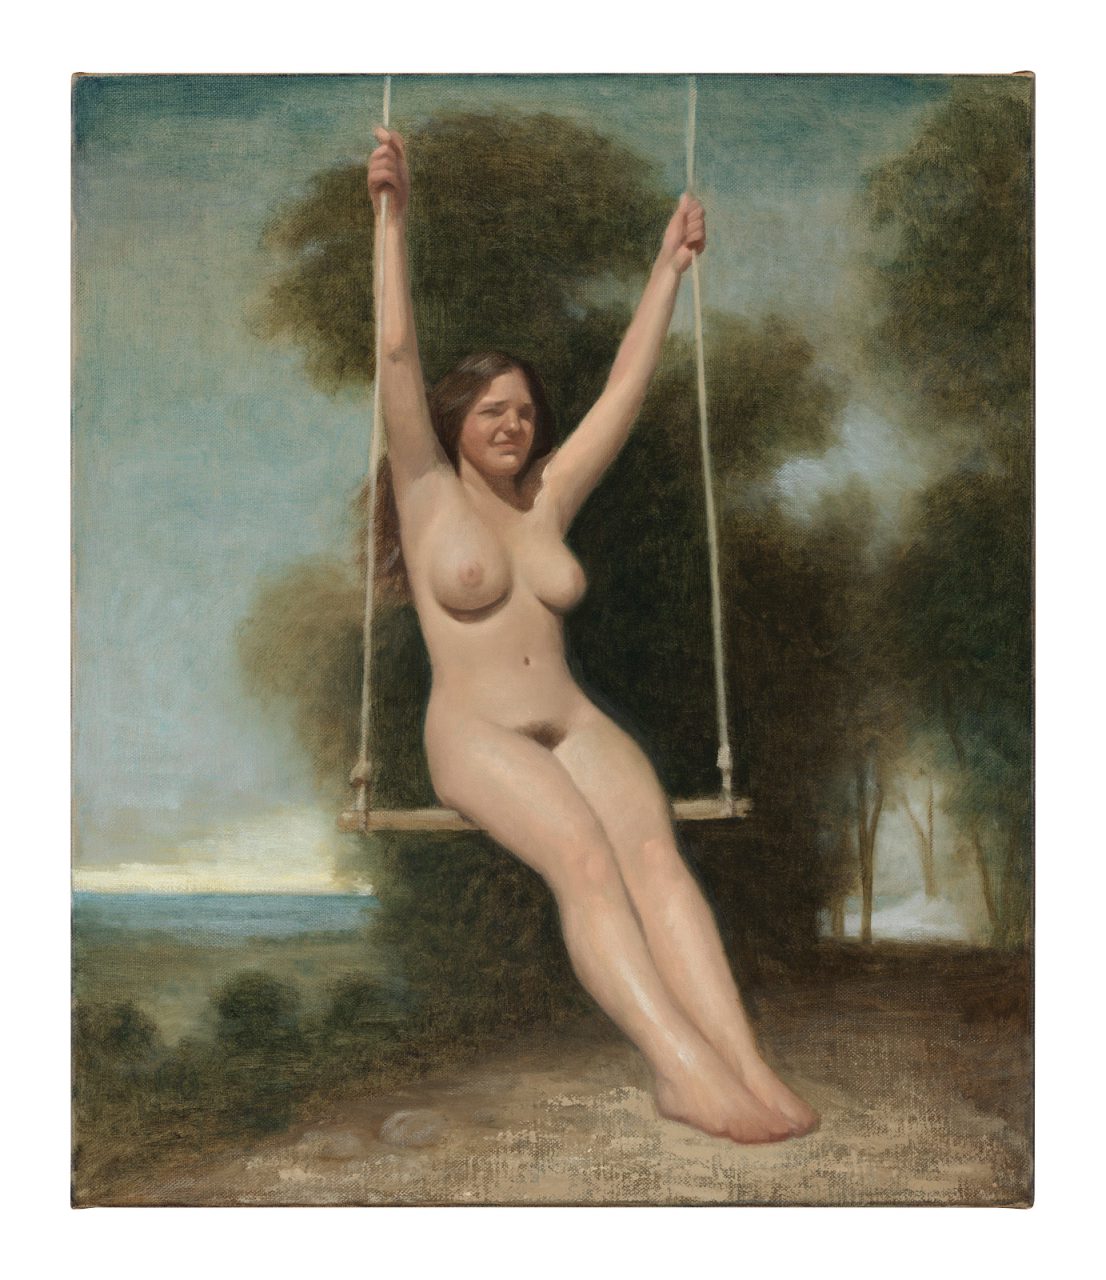 La Balançoire, Oil on Canvas, 65 x 55 cm, 2018 (Photo by Lepkowski Studios)